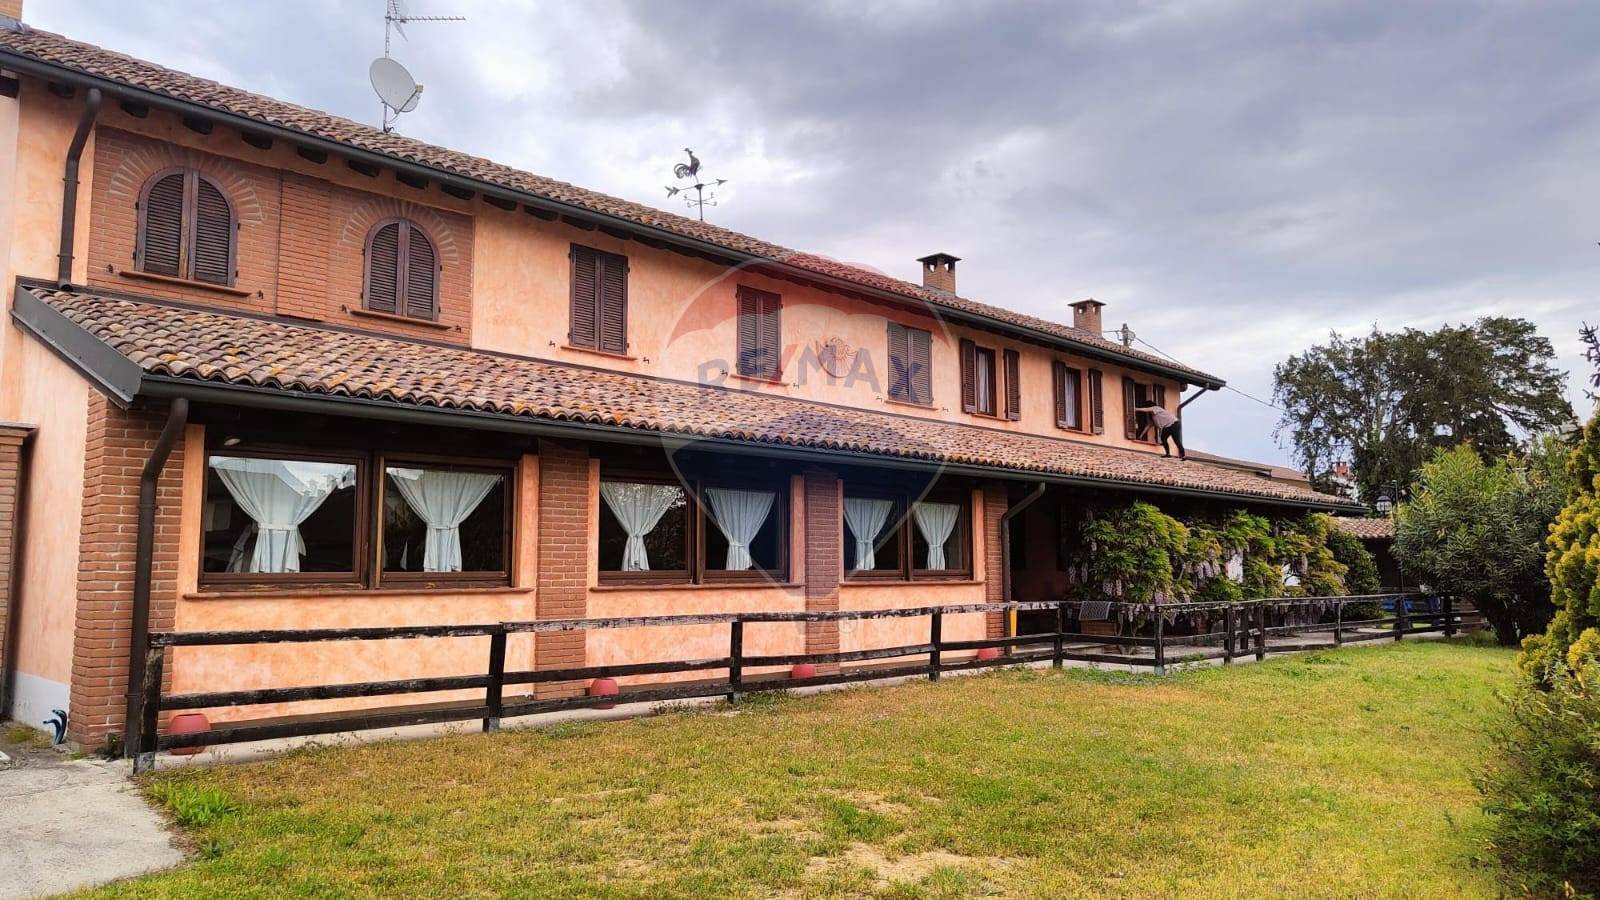 Villa in vendita a Zerbolò, 7 locali, prezzo € 380.000 | PortaleAgenzieImmobiliari.it